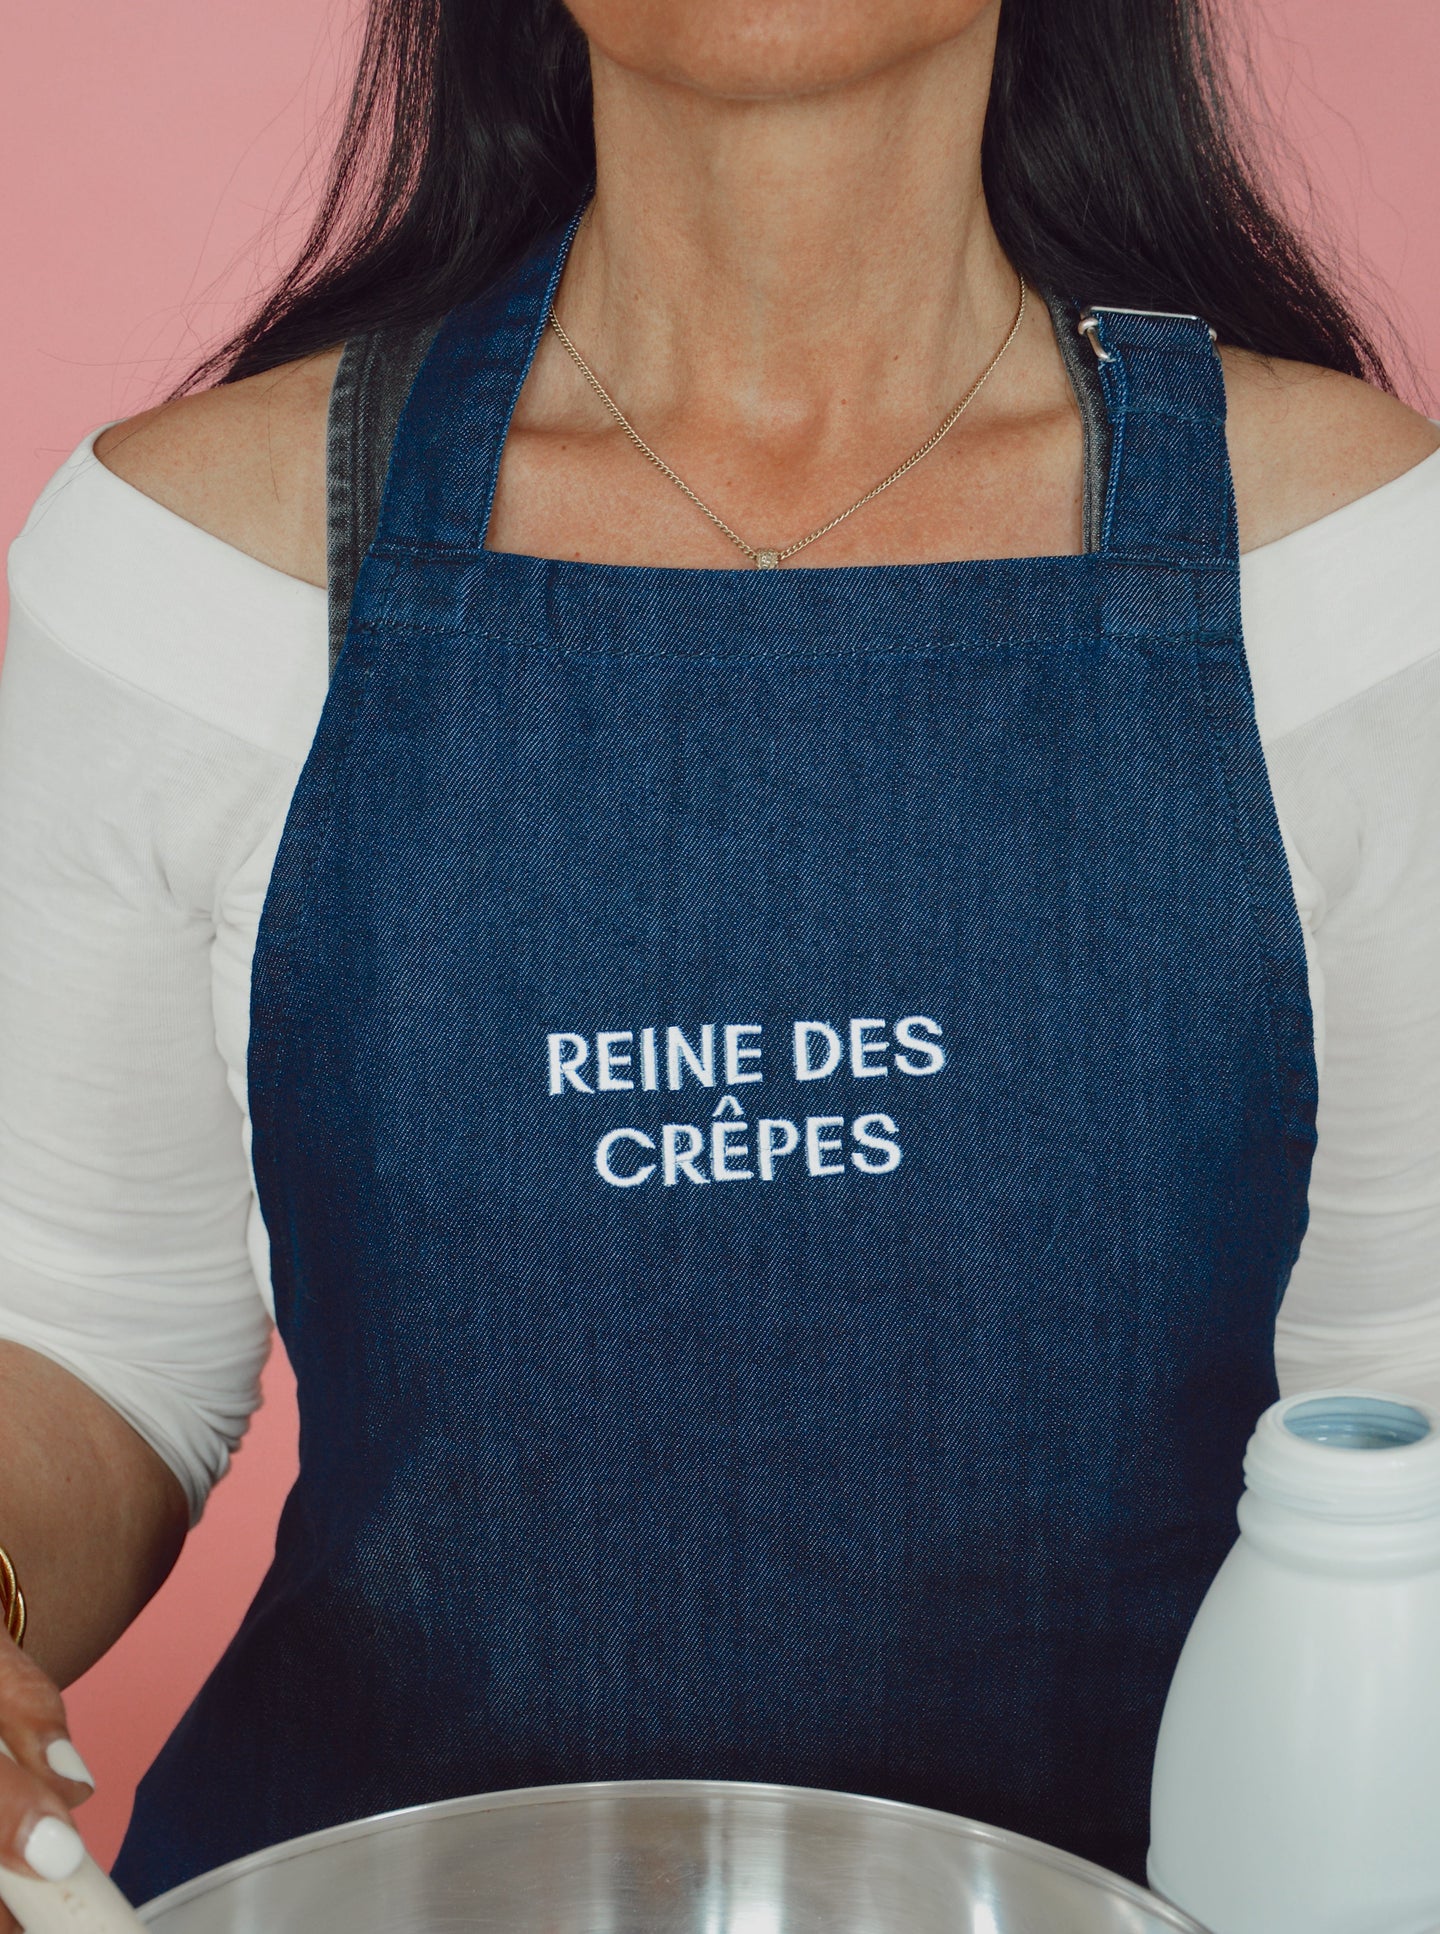 Tablier de cuisine femme personnalisé brodé "Reine des crêpes"